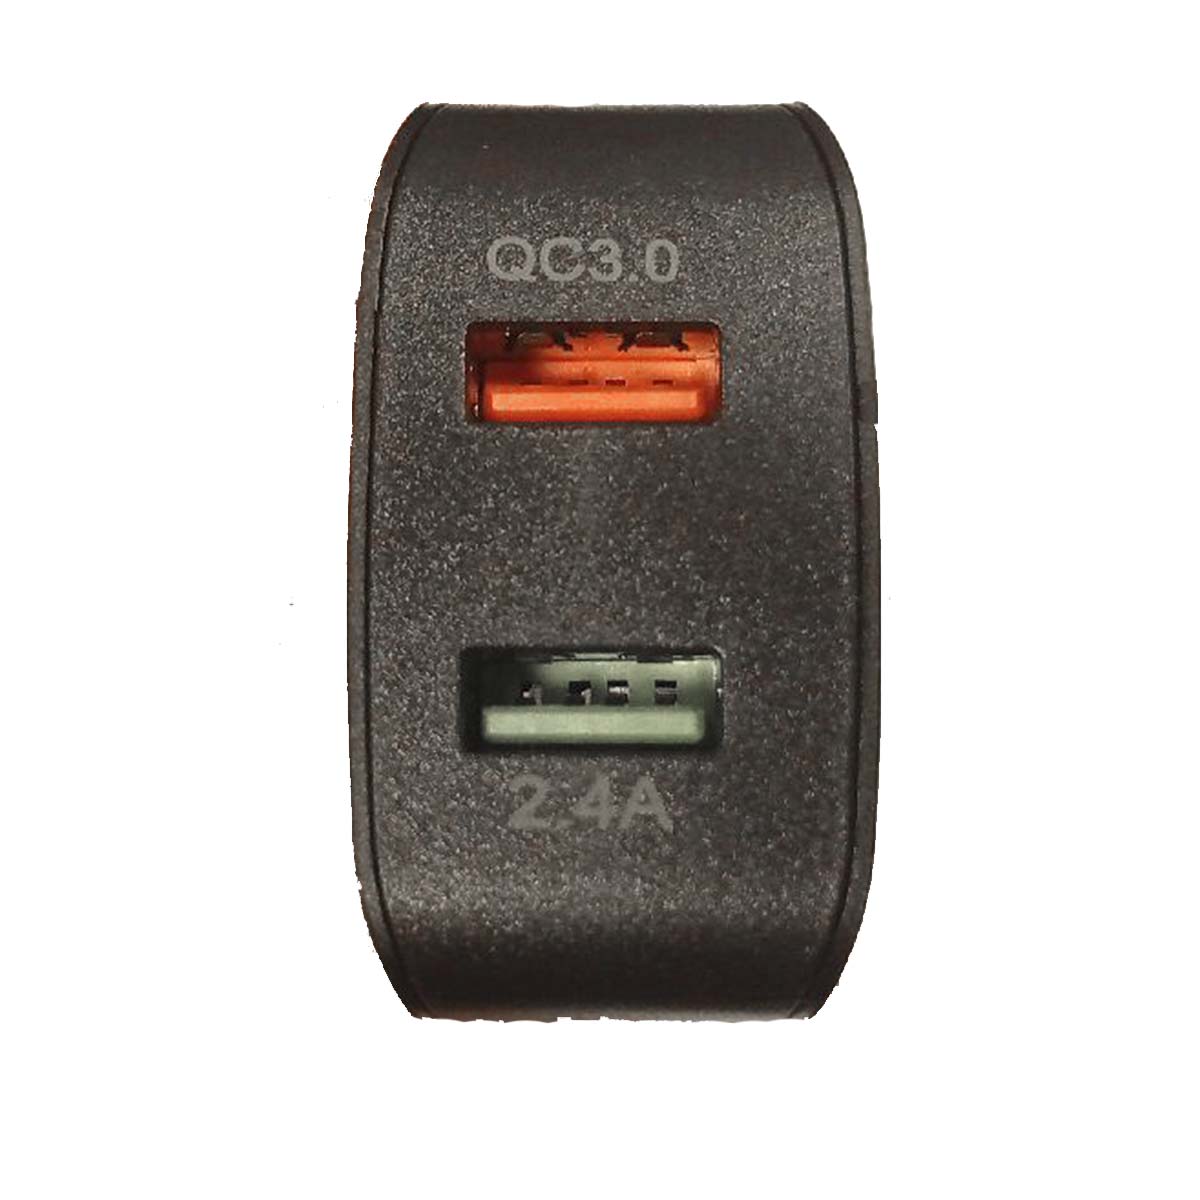 СЗУ (Сетевое зарядное устройство) MRM MR821C, 2.4A, QC 3.0, 2 USB, цвет черный